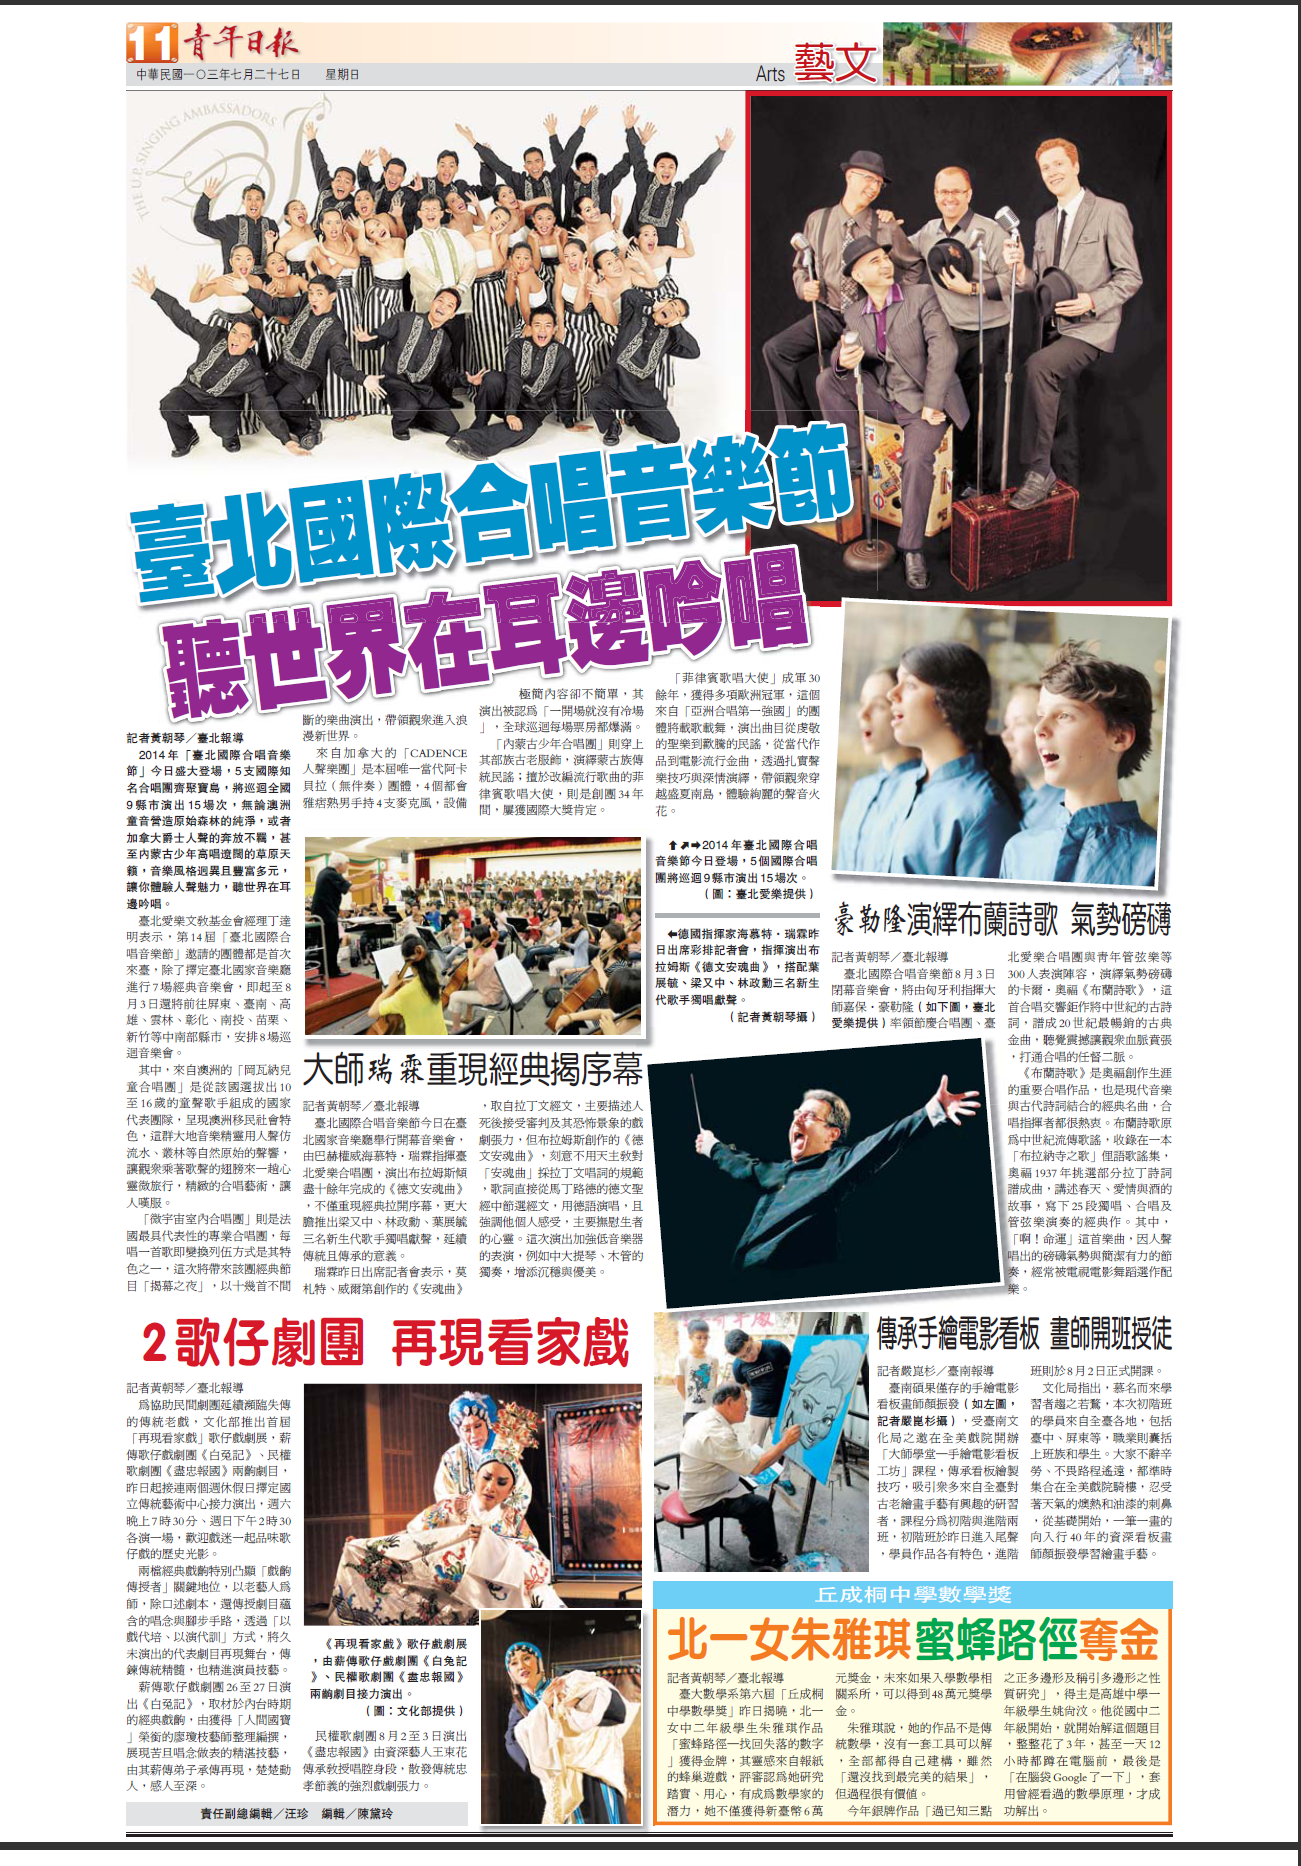 【青年日報】臺北國際合唱音樂節 聽世界在耳邊吟唱